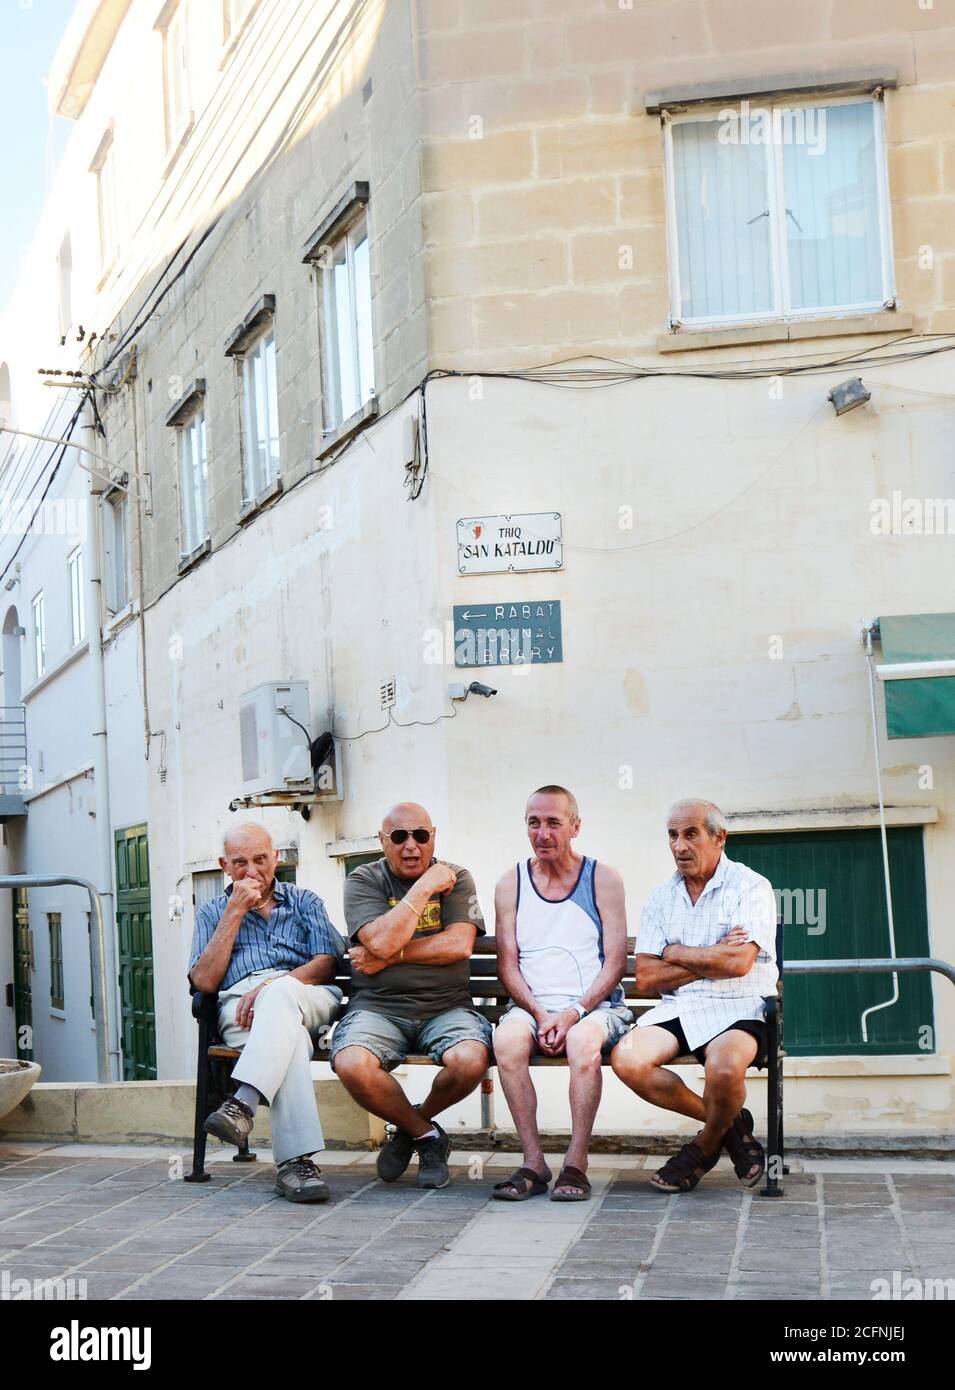 Maltese men socializing in Rabat, Malta. Stock Photo